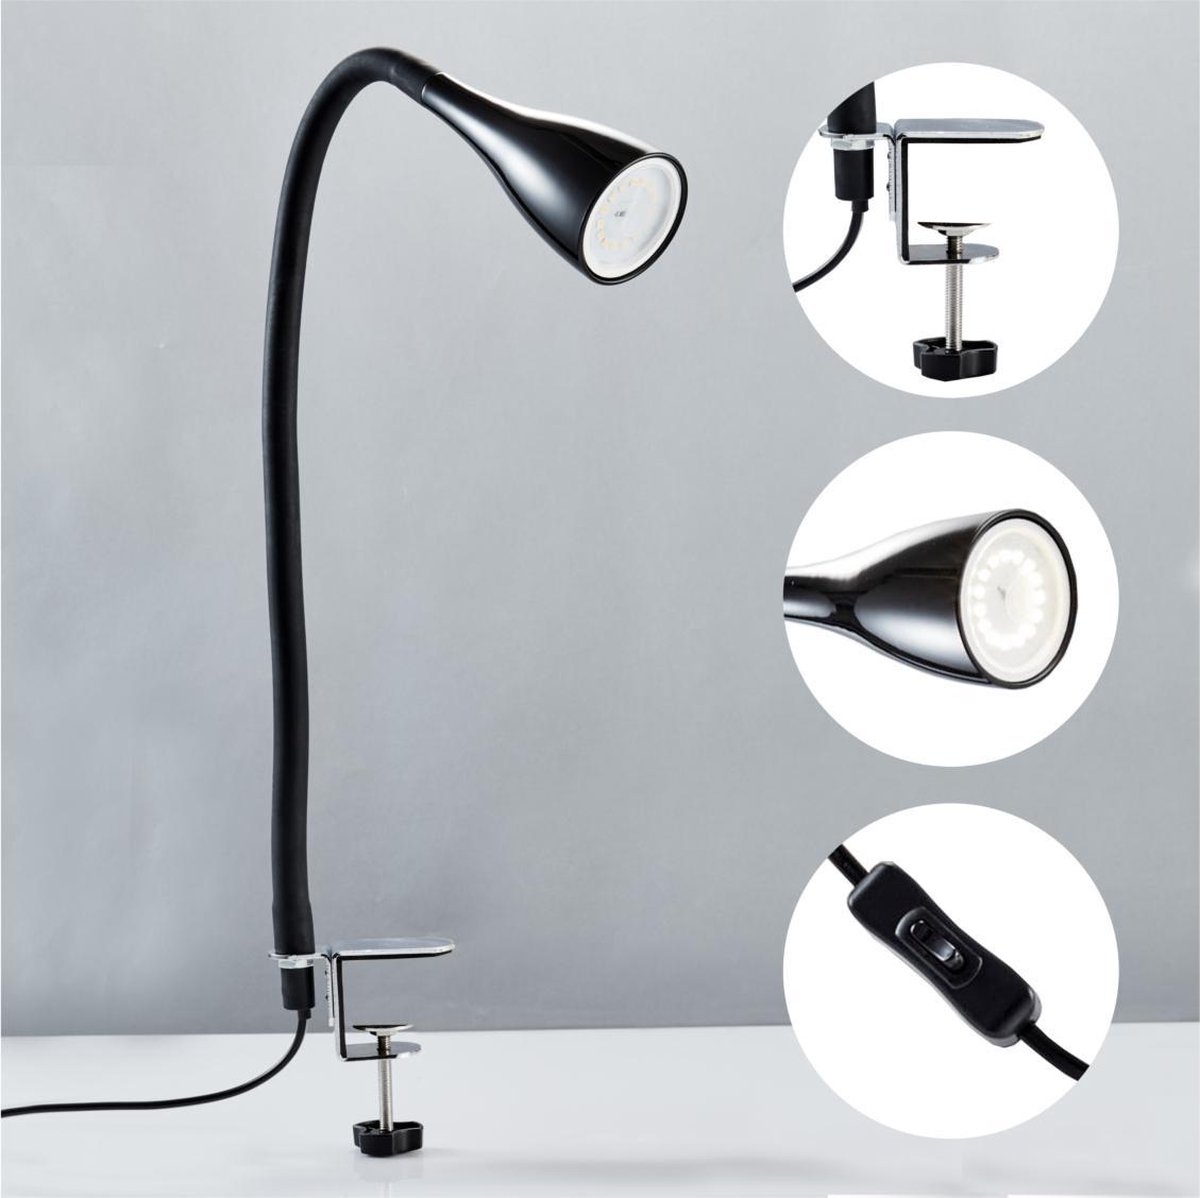 Lampe de table LED dimmable lampe de chevet lampe de table lampe de bureau  variateur tactile 3 niveaux, métal noir, 1x LED 8,5 W 650 Lm blanc chaud,  LxlxH 42x11x40 cm